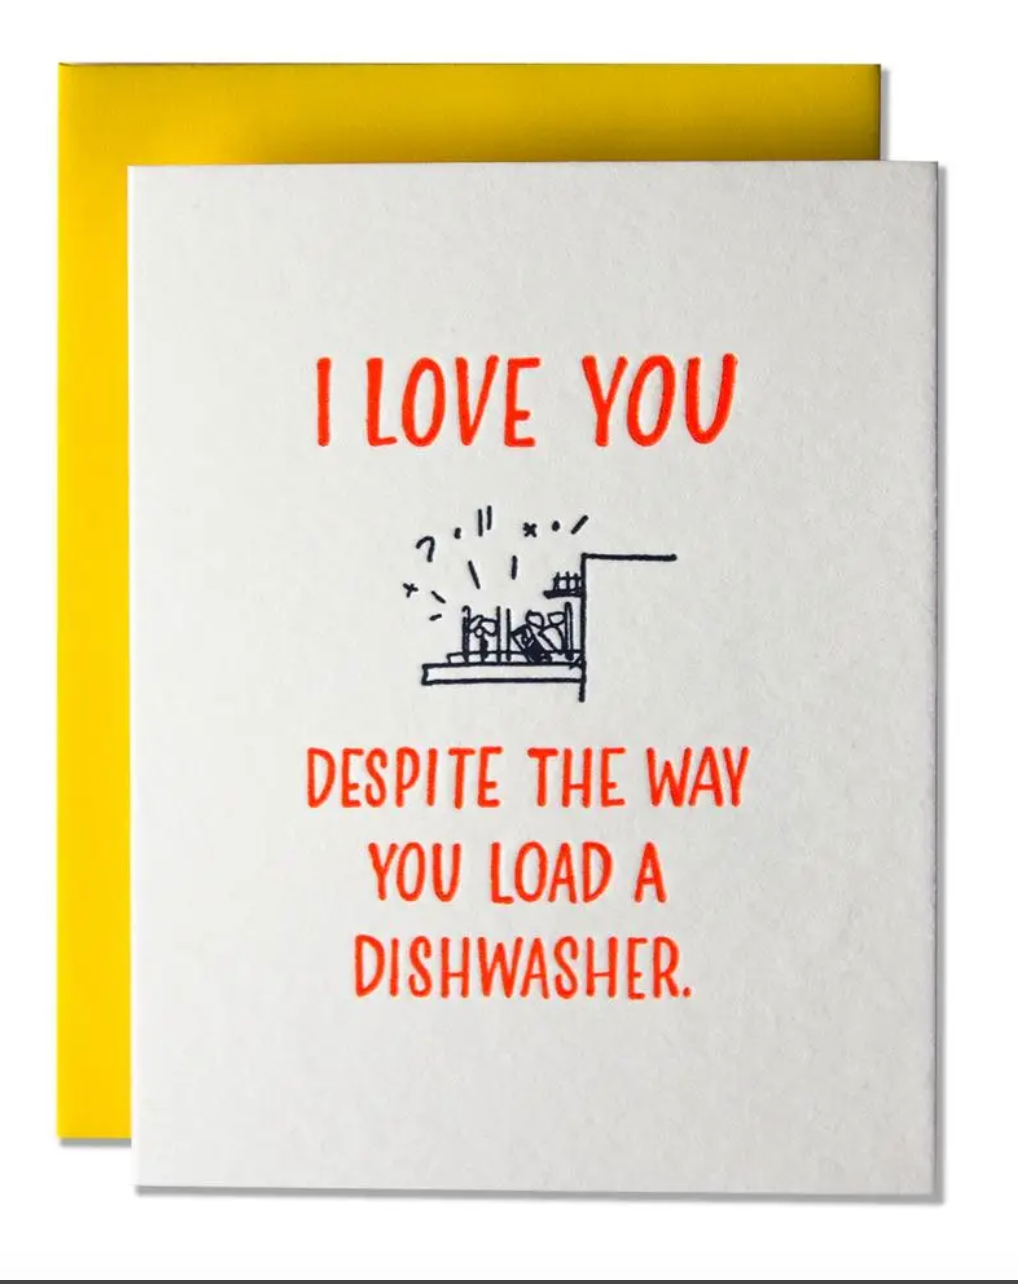 Load A Dishwasher Card